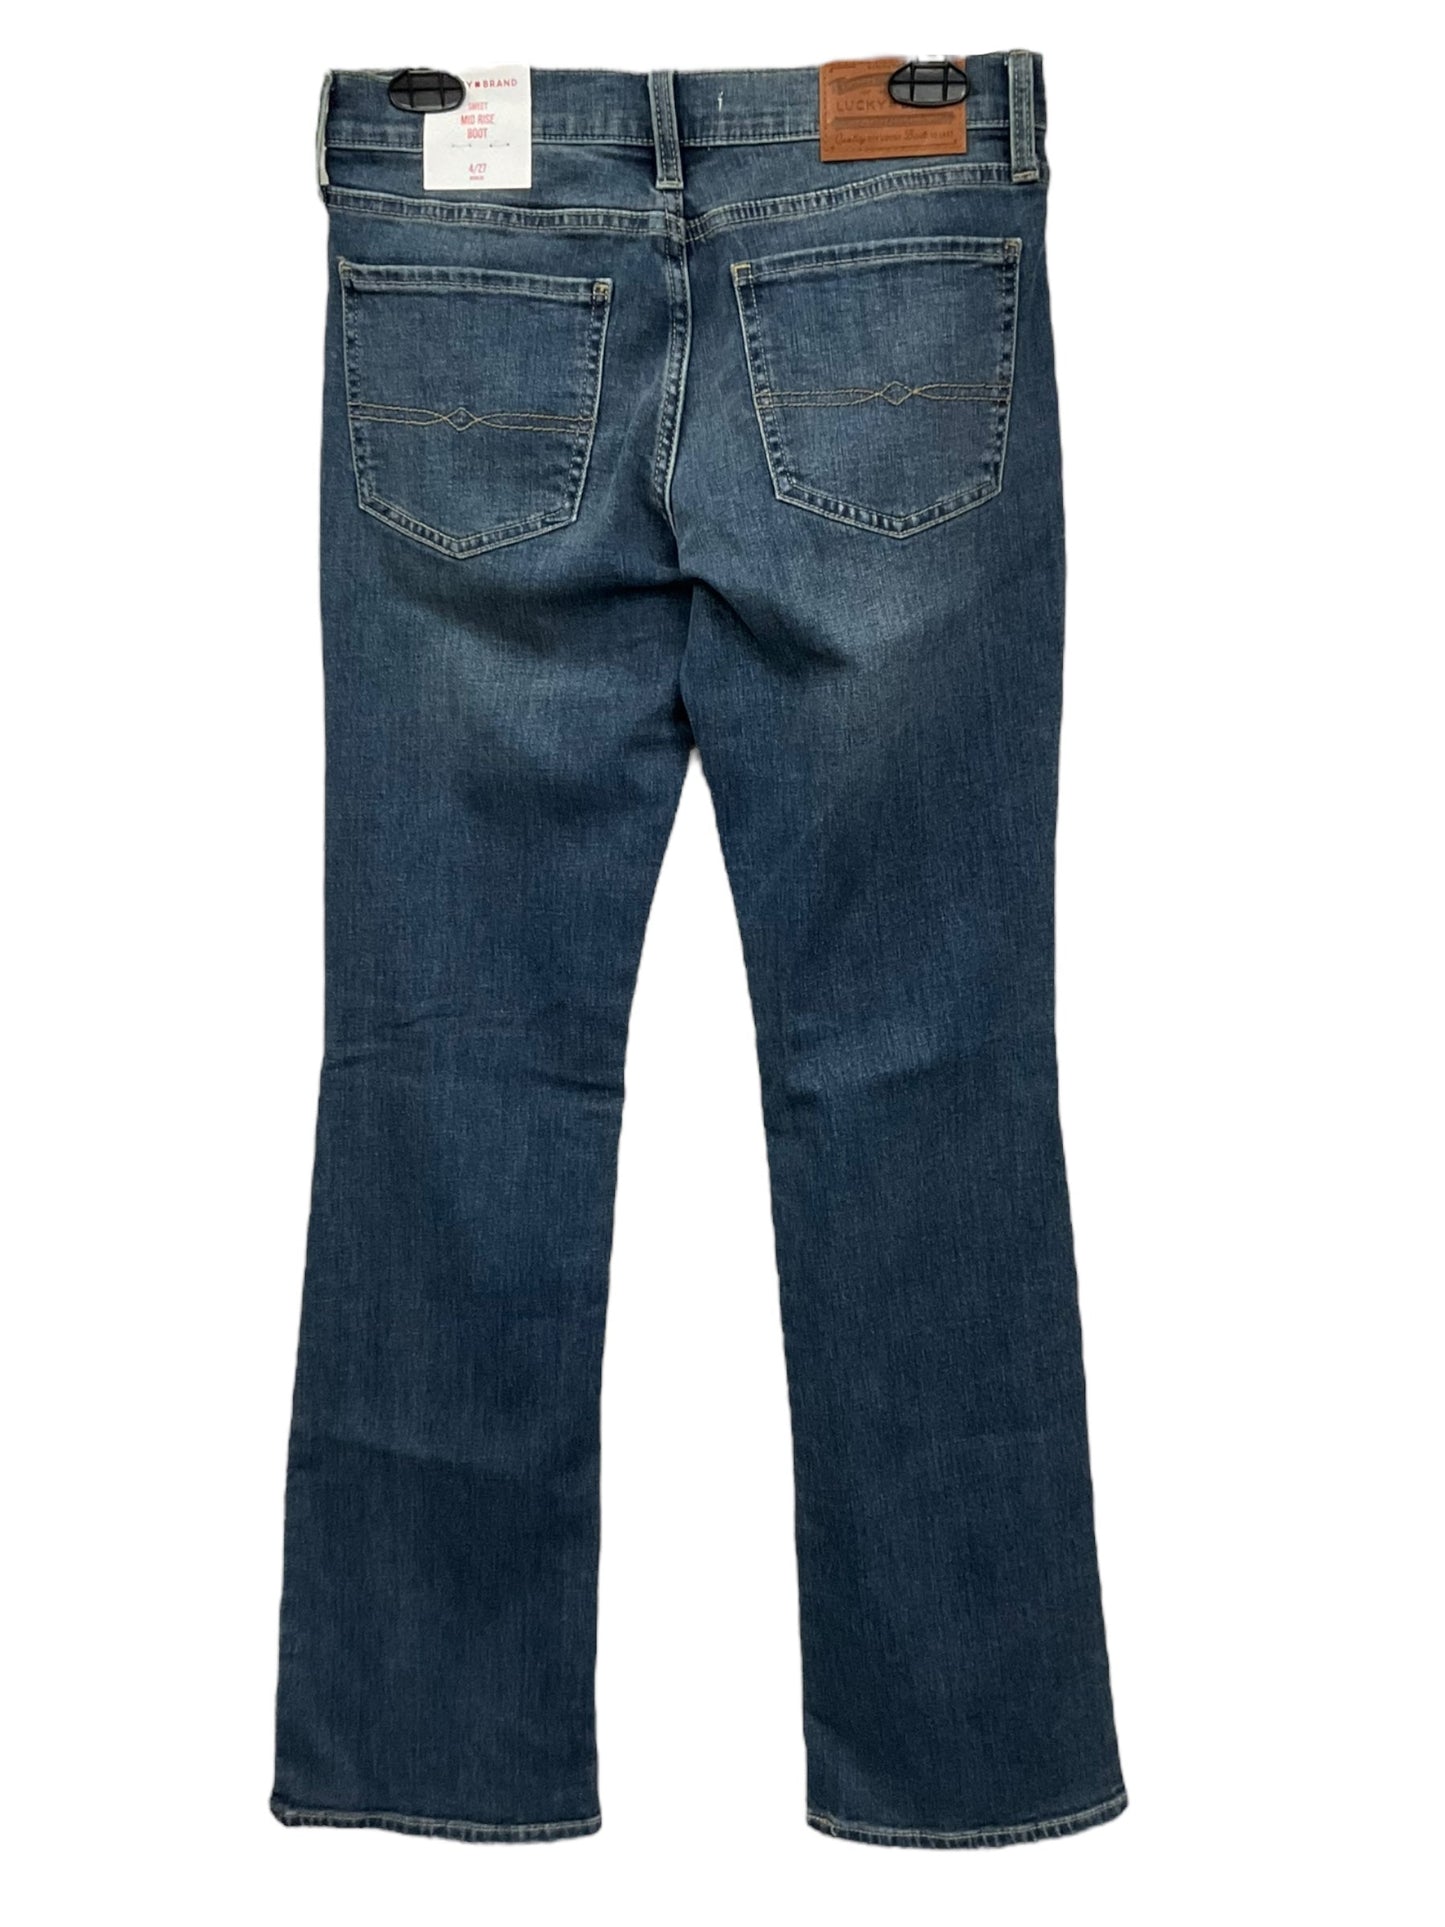 Blue Denim Jeans Boot Cut Lucky Brand, Size 4